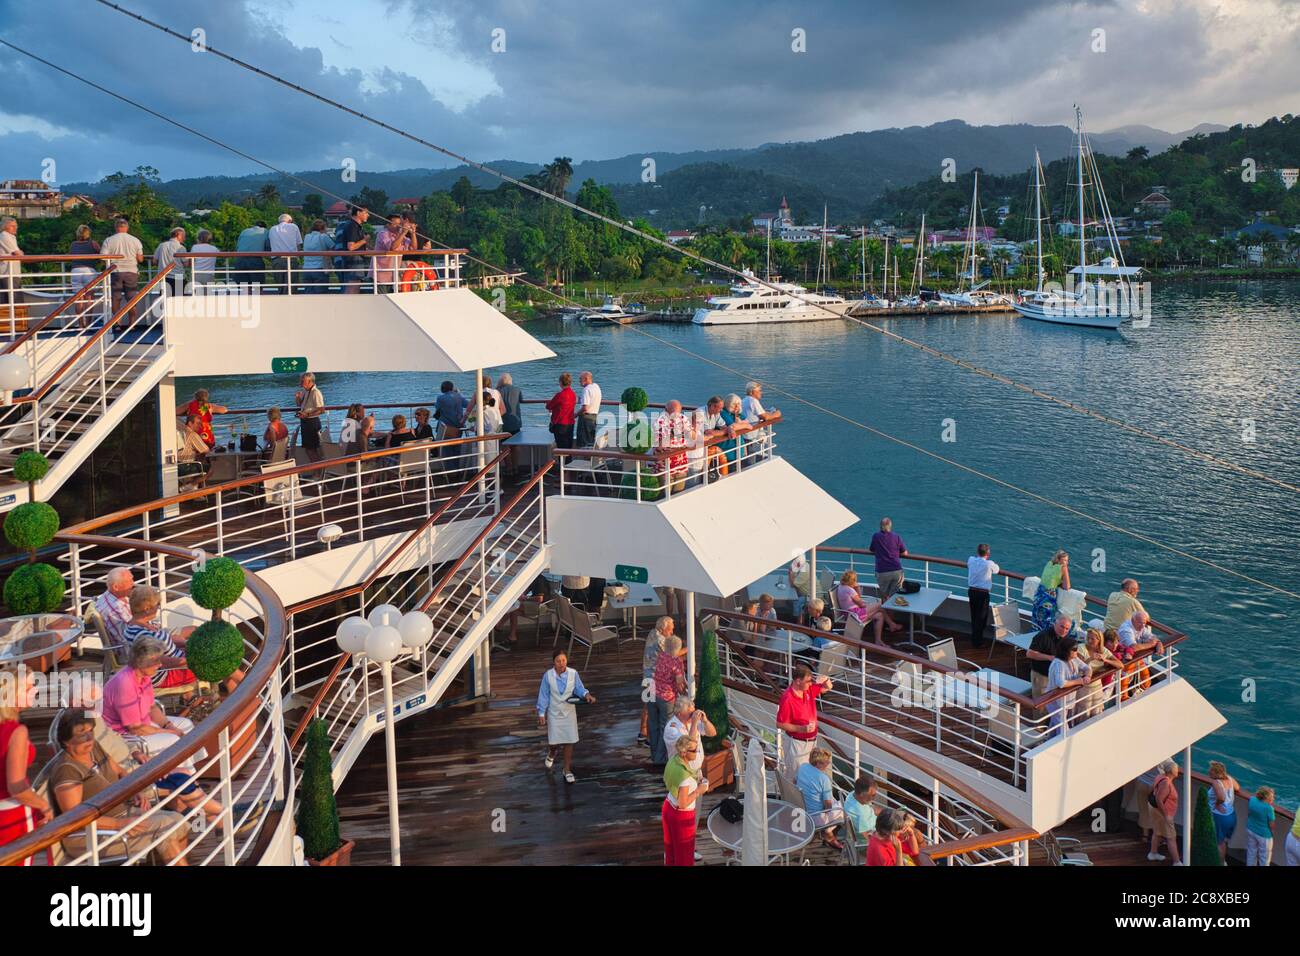 La gente en las barandillas de un crucero observa como el barco llega al puerto con otros barcos ya amarrados, en Jamaica, el Caribe Foto de stock